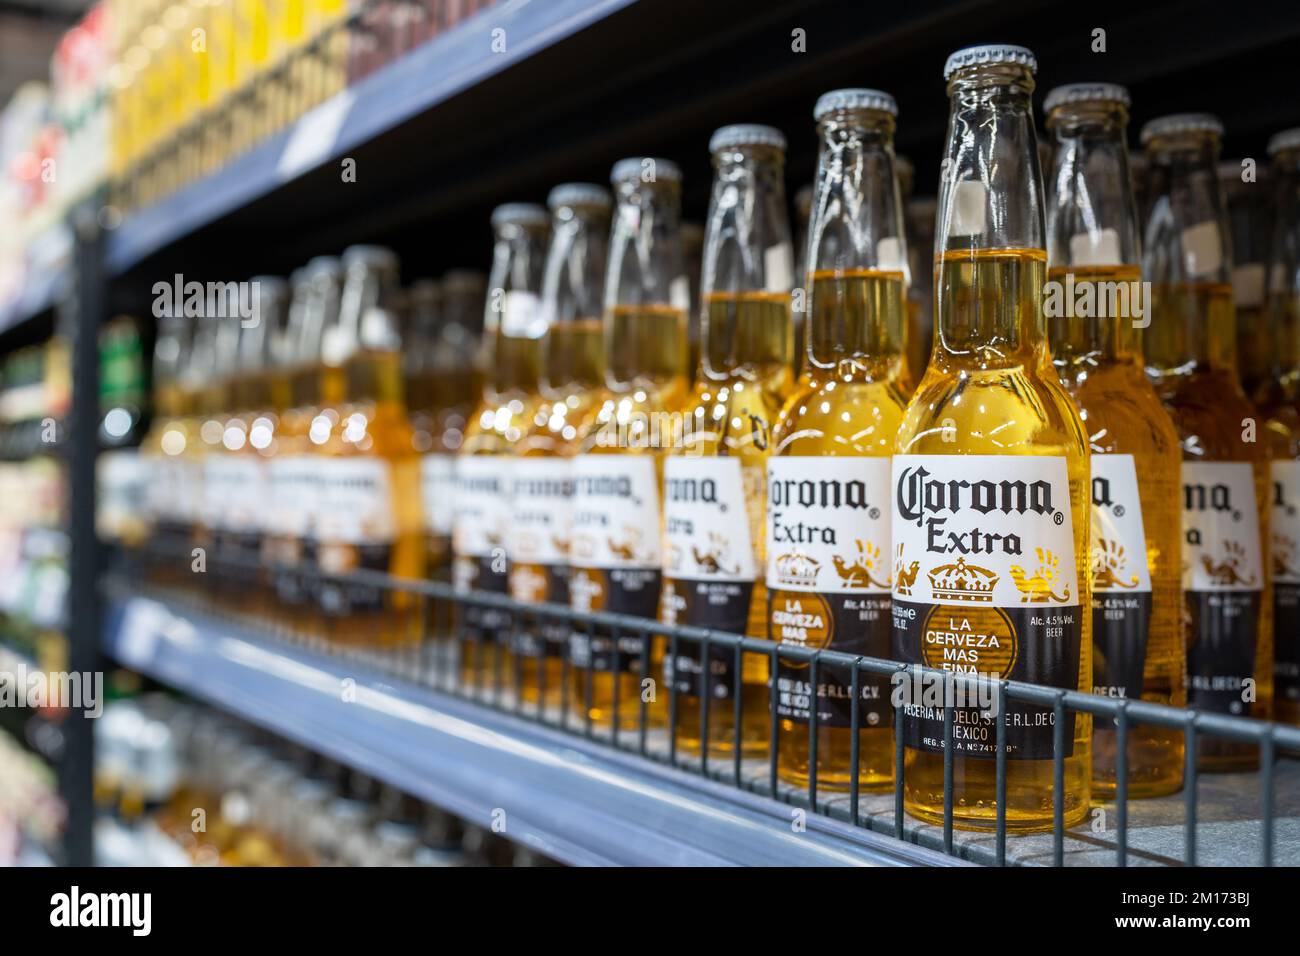 Bouteilles de bière supplémentaires Corona sur les étagères d'un supermarché. Corona Extra est un lager pâle produit par Cervecería Modelo au Mexique. Minsk, Bélarus, 2022 Banque D'Images